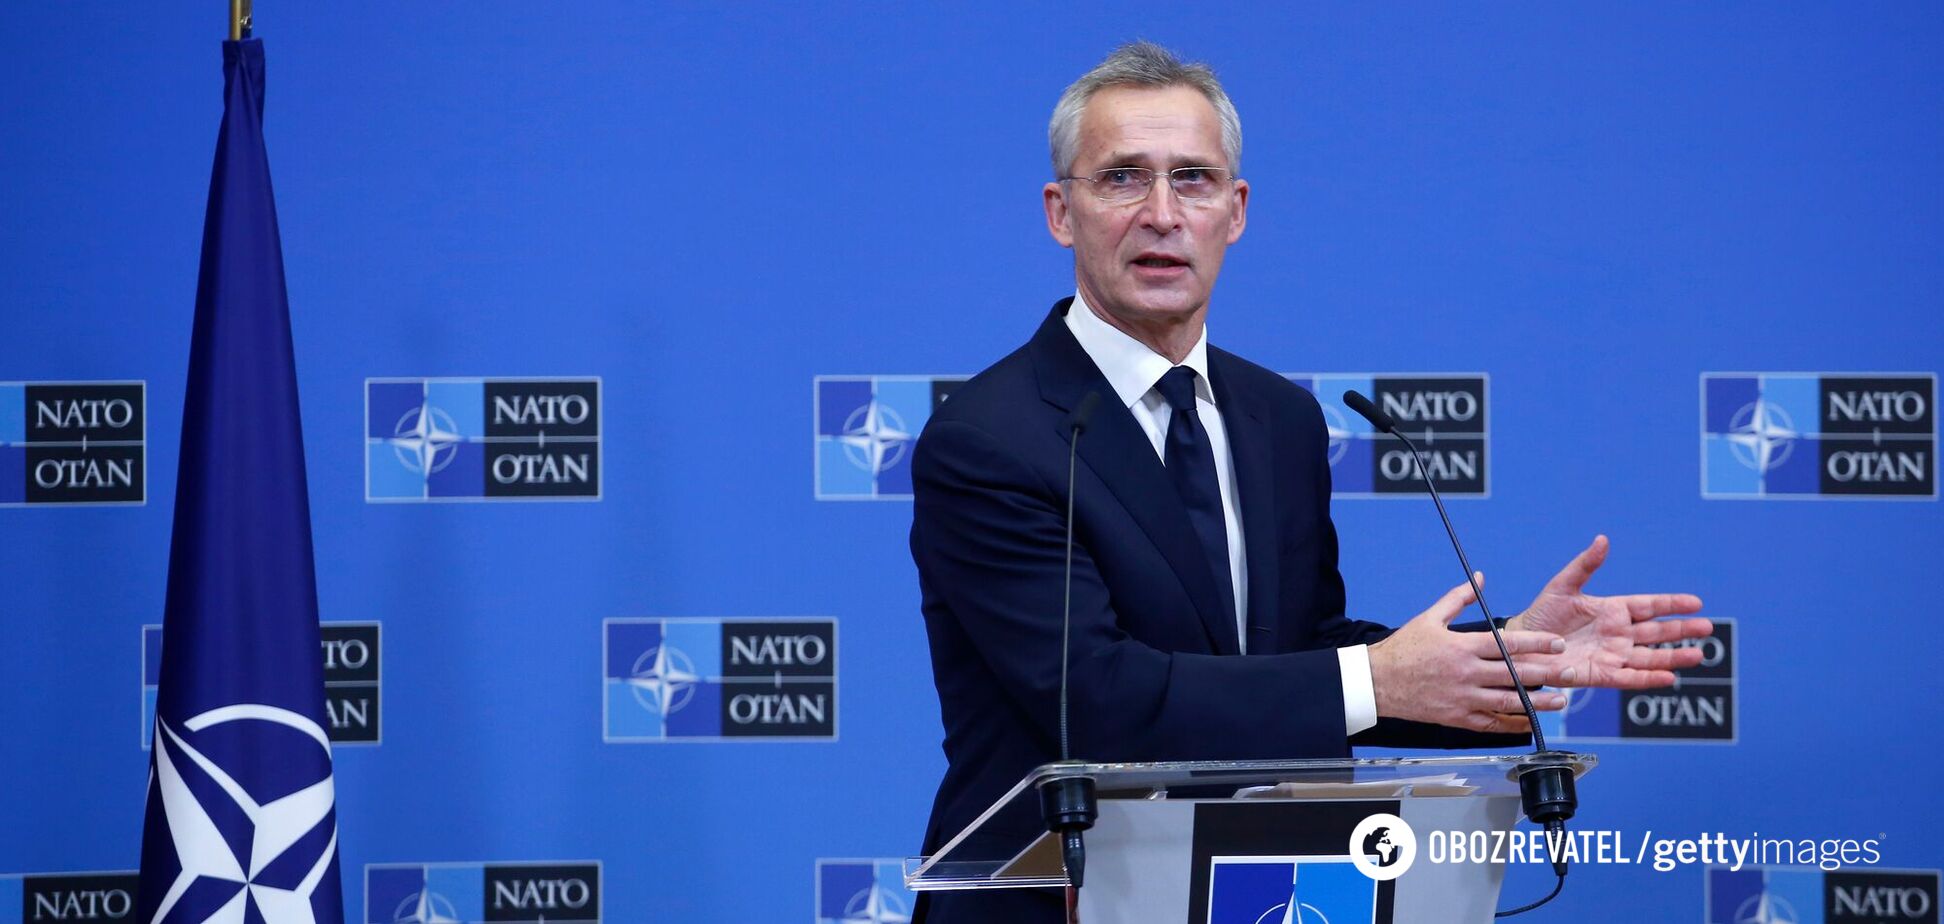 Вывод войск из Украины и никаких компромиссов по вступлению: в НАТО передали РФ свой ответ на требования 'гарантий безопасности'